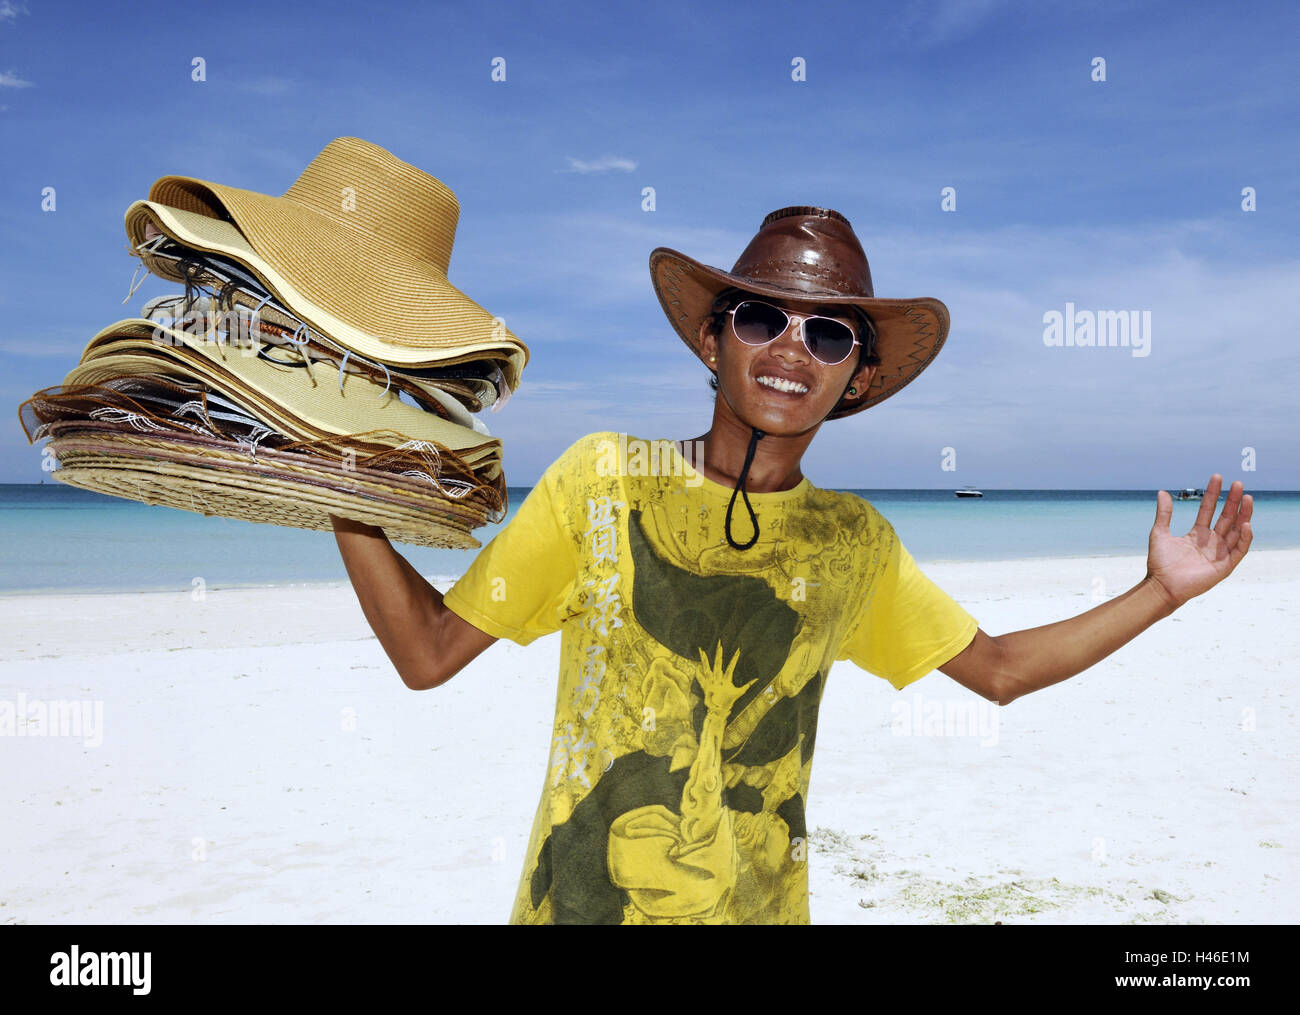 Playa, hombre, joven, ver Kamrea, sonrisa, sombreros, gorras